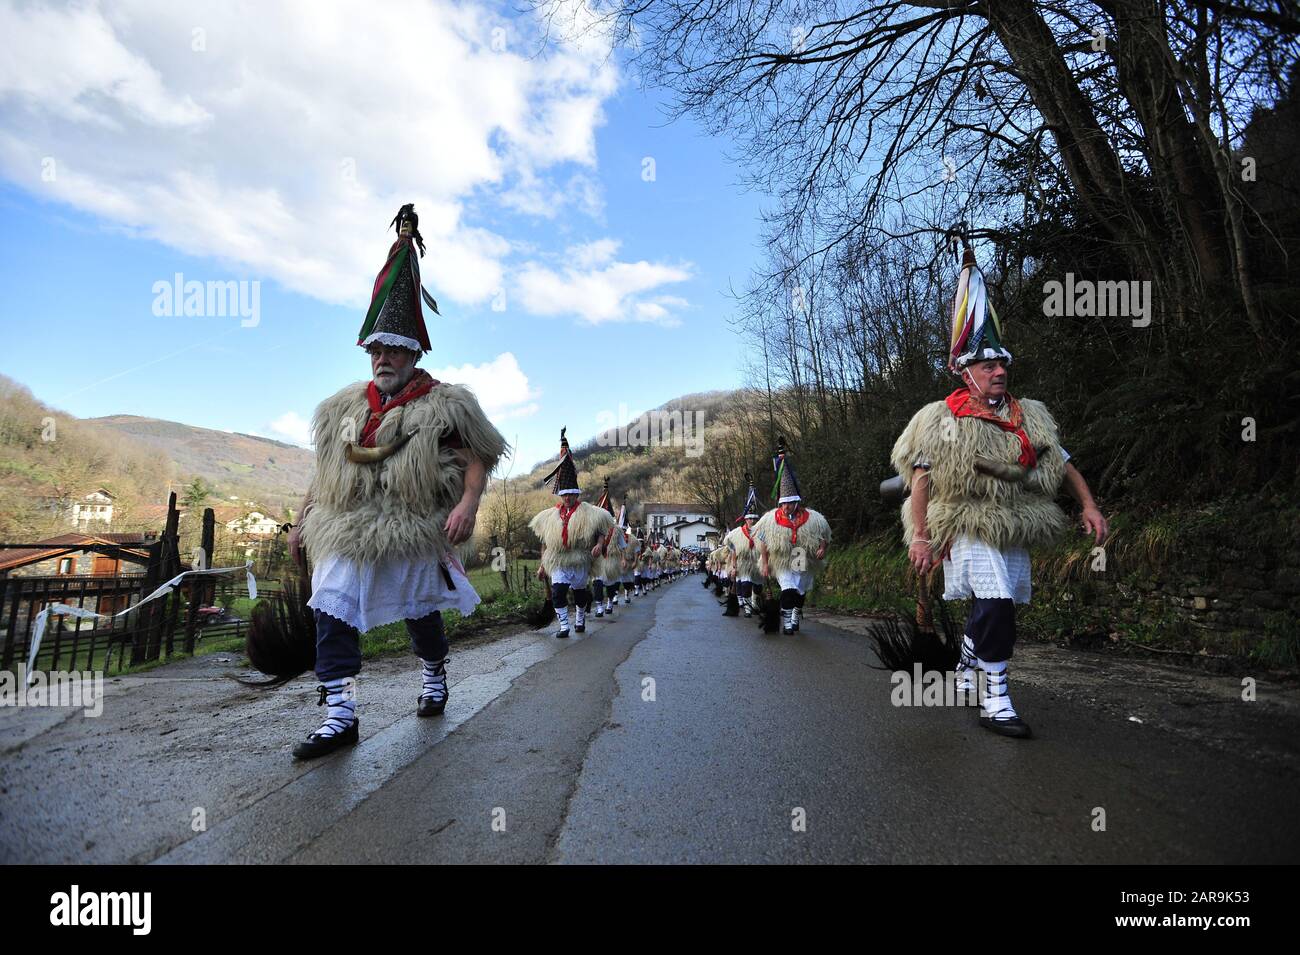 Joaldunaks défilent dans les rues pendant le carnaval. Le son des cloches  est entendu à travers la vallée de Bidasoa, Ituren un petit village situé  dans la région de Malerreka, présage l'accueil